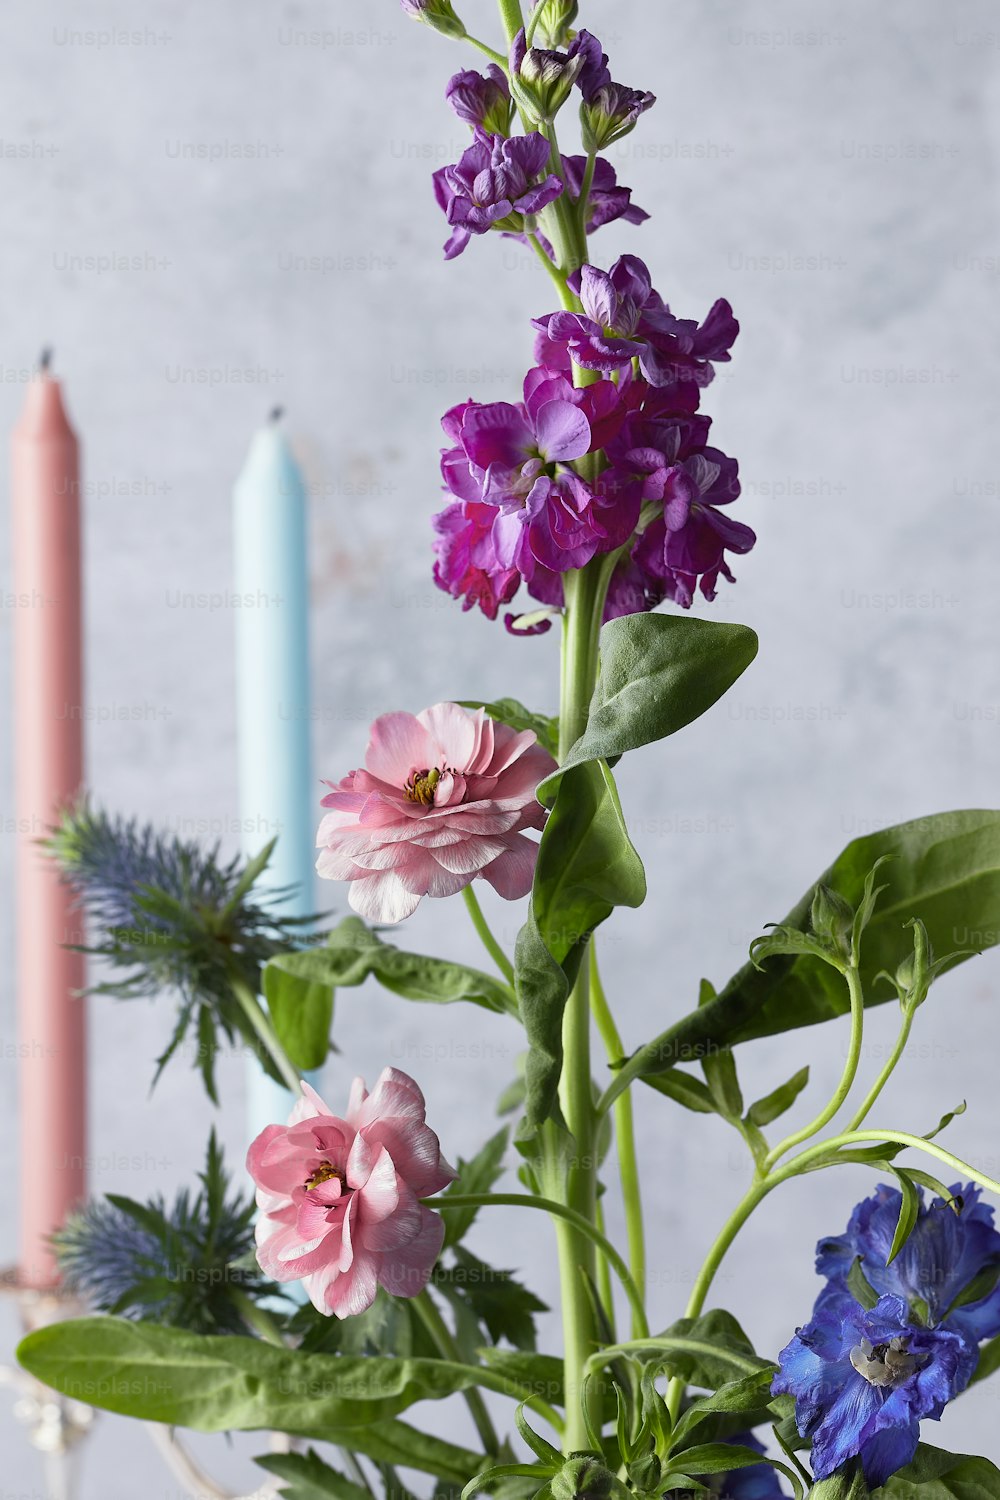 eine Vase gefüllt mit lila Blumen neben zwei Kerzen